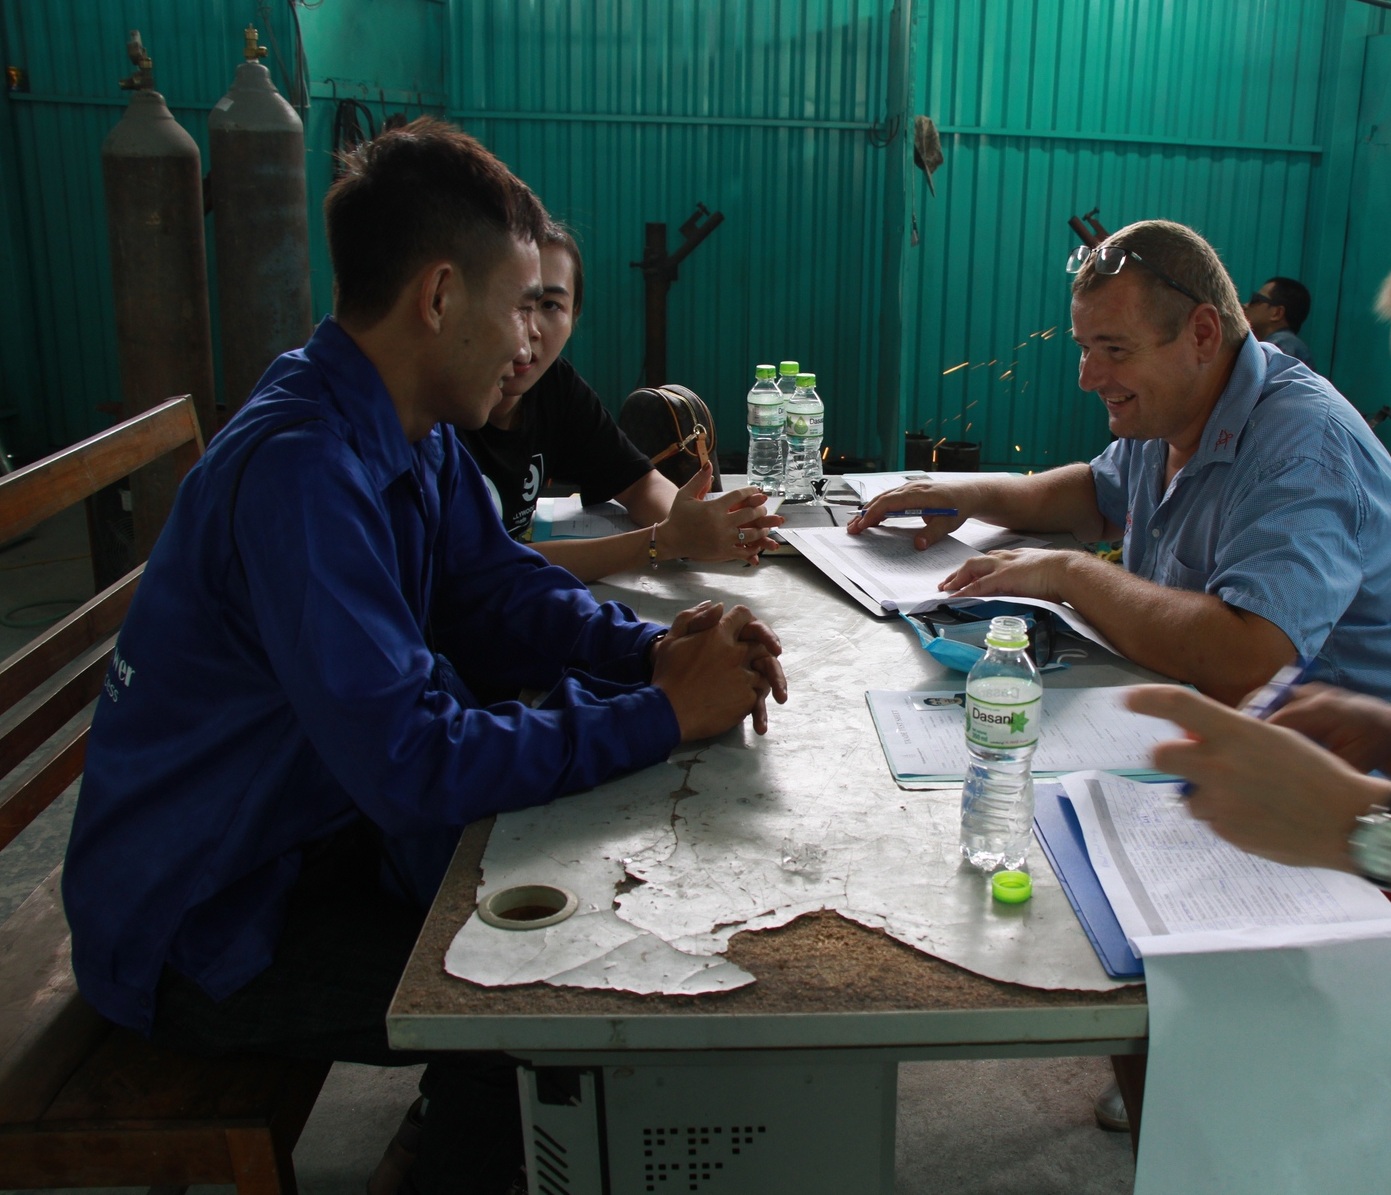 تم تجنيد 50 من عمال اللحام الفيتناميين ذوي المهارات الجيدة في حملة ناجحة لشريك سلوفاكيا